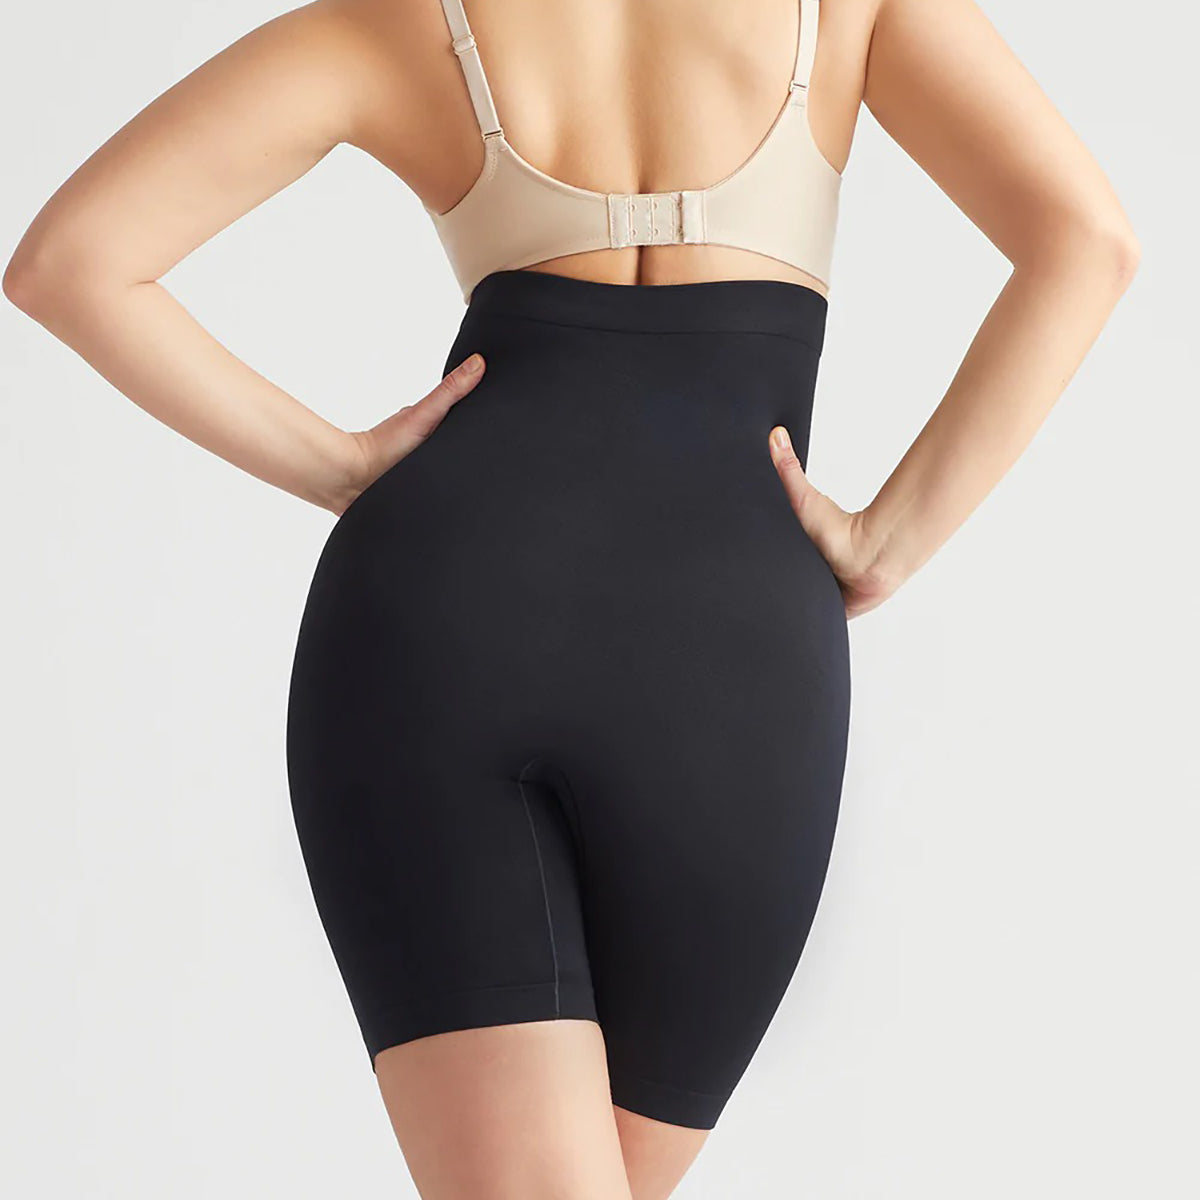 Yummie Women's Hidden Curve High Waist Firm Control Shapewear Skirt Slip